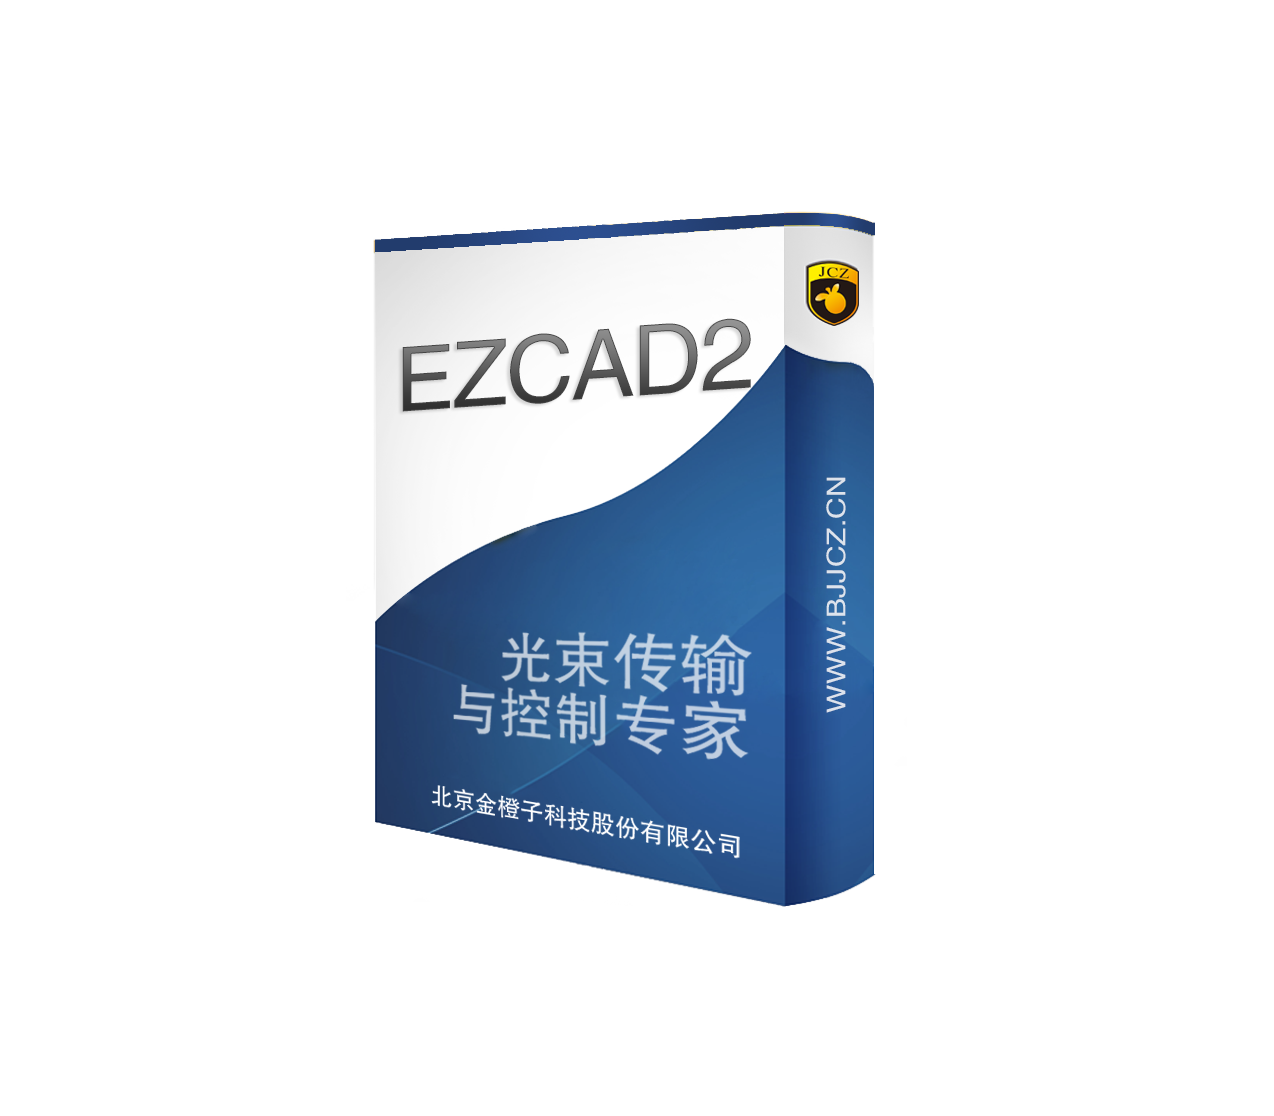 金橙子Ezcad2软件+LMC系列控制卡